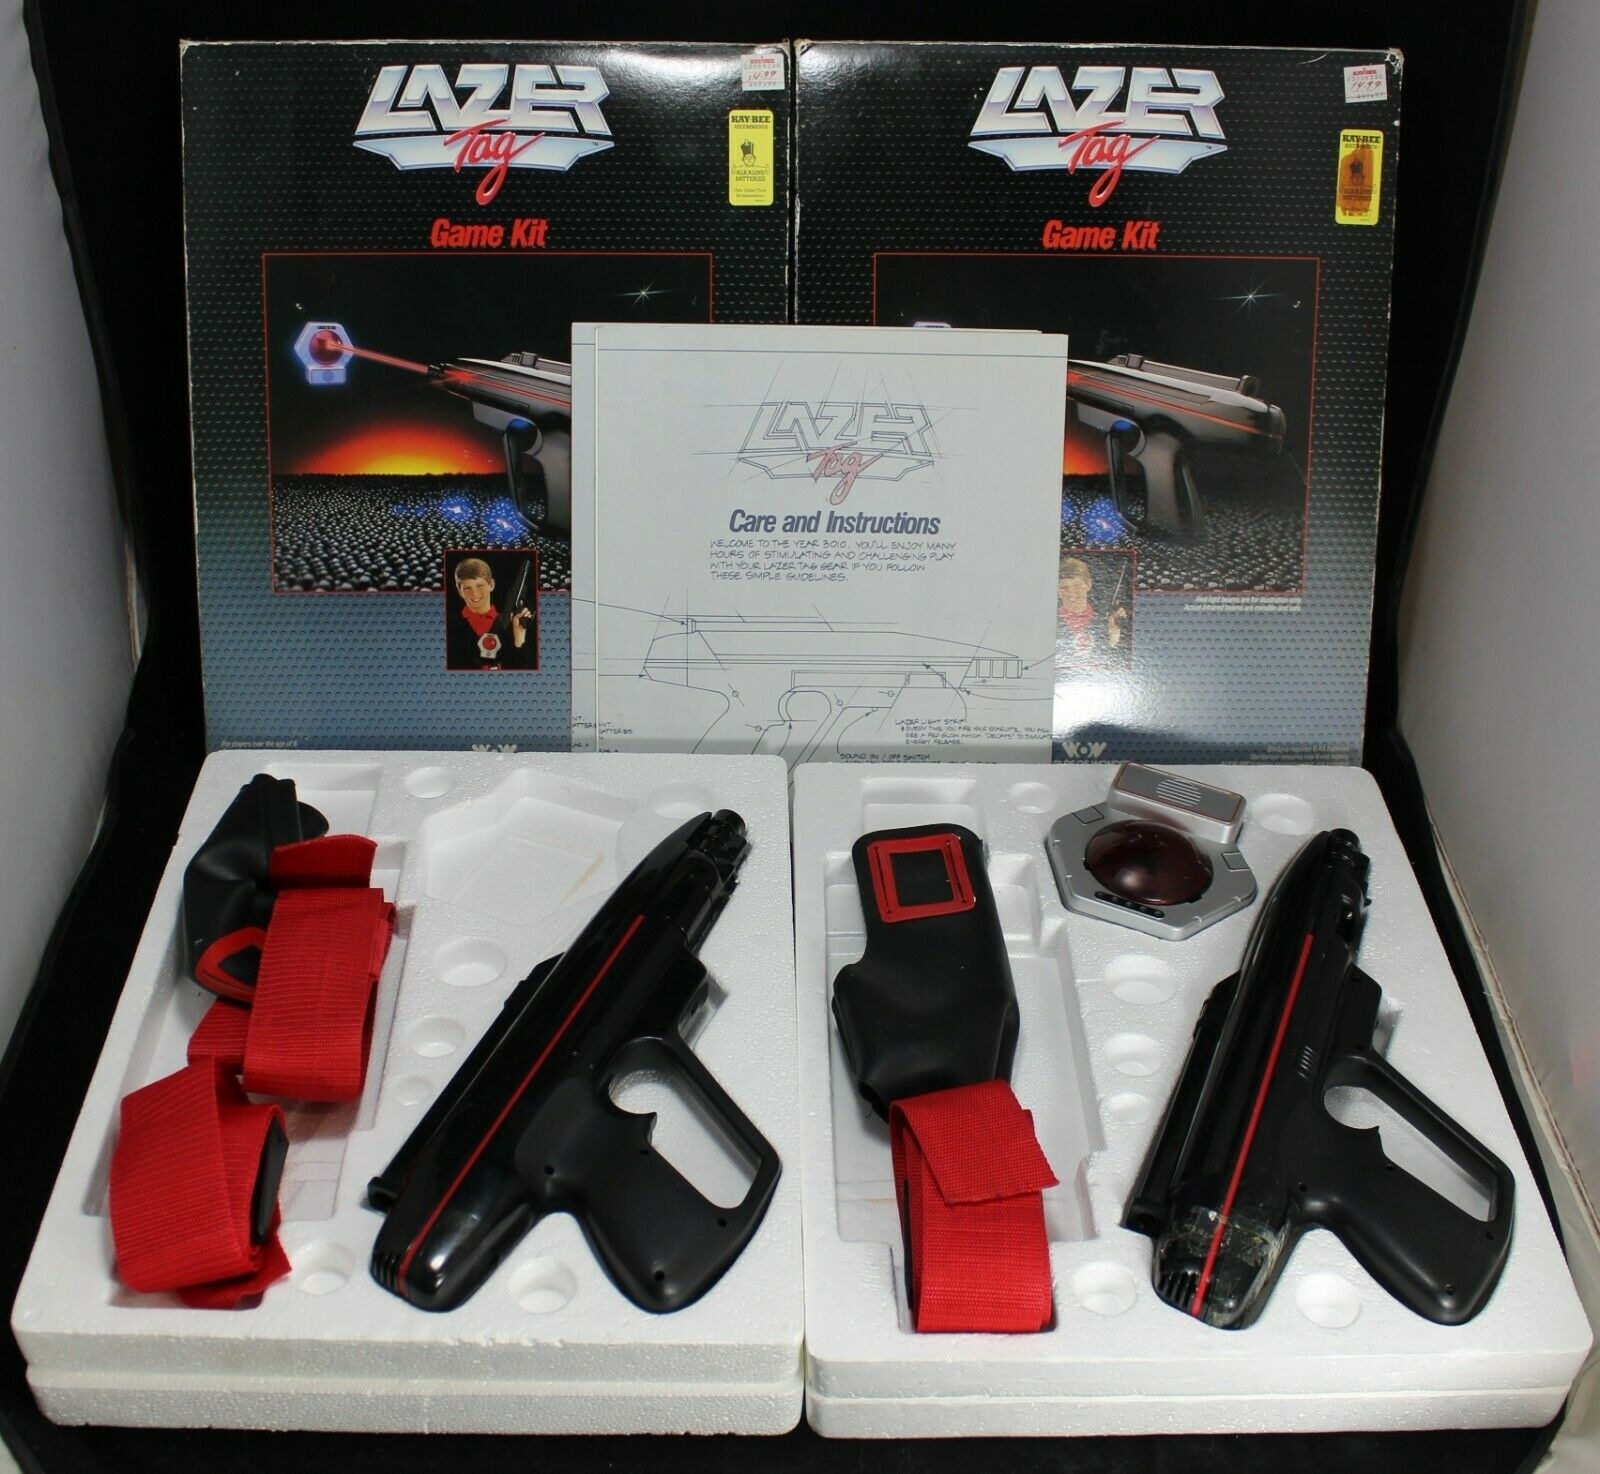 a laser tag set